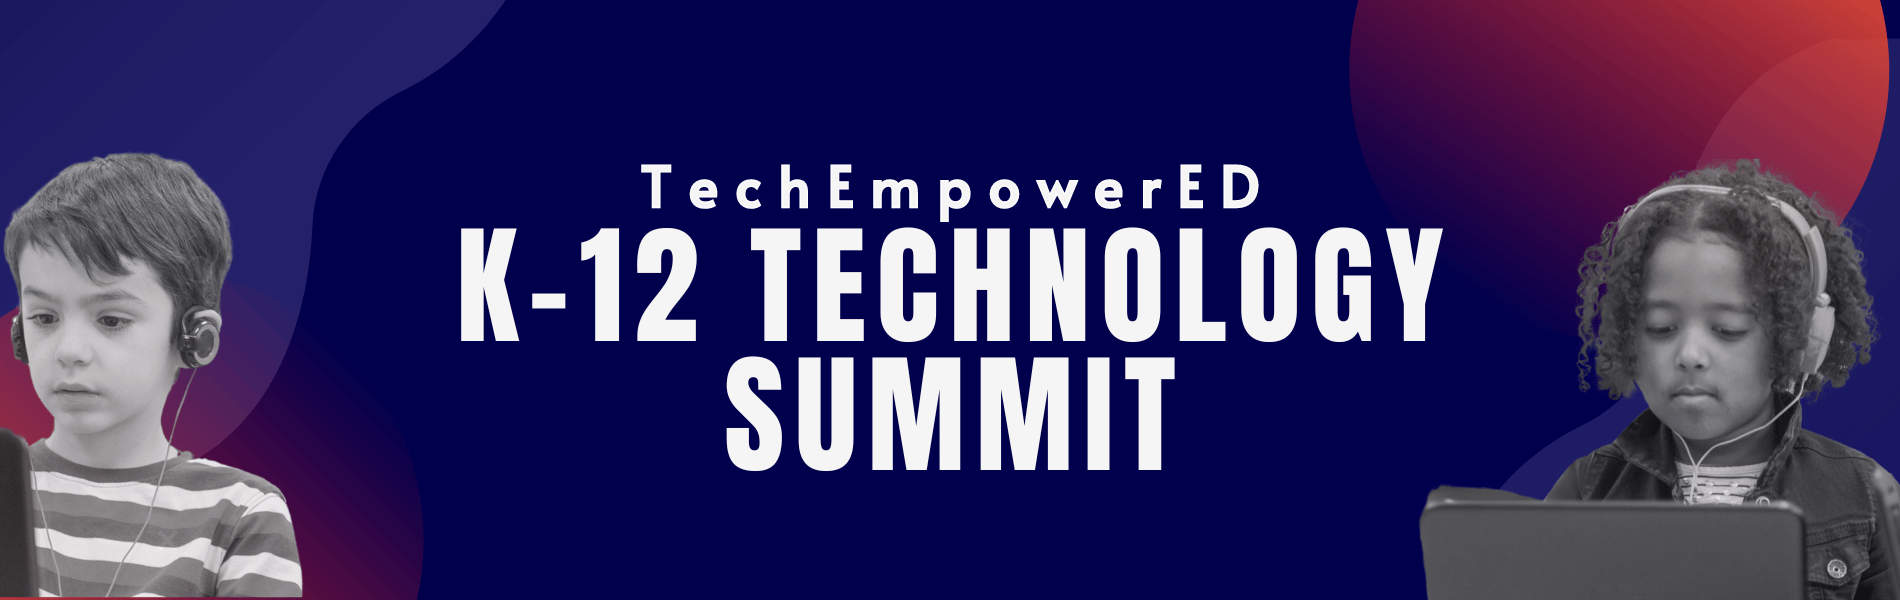 TechEmpowered K-12 Technology Summit